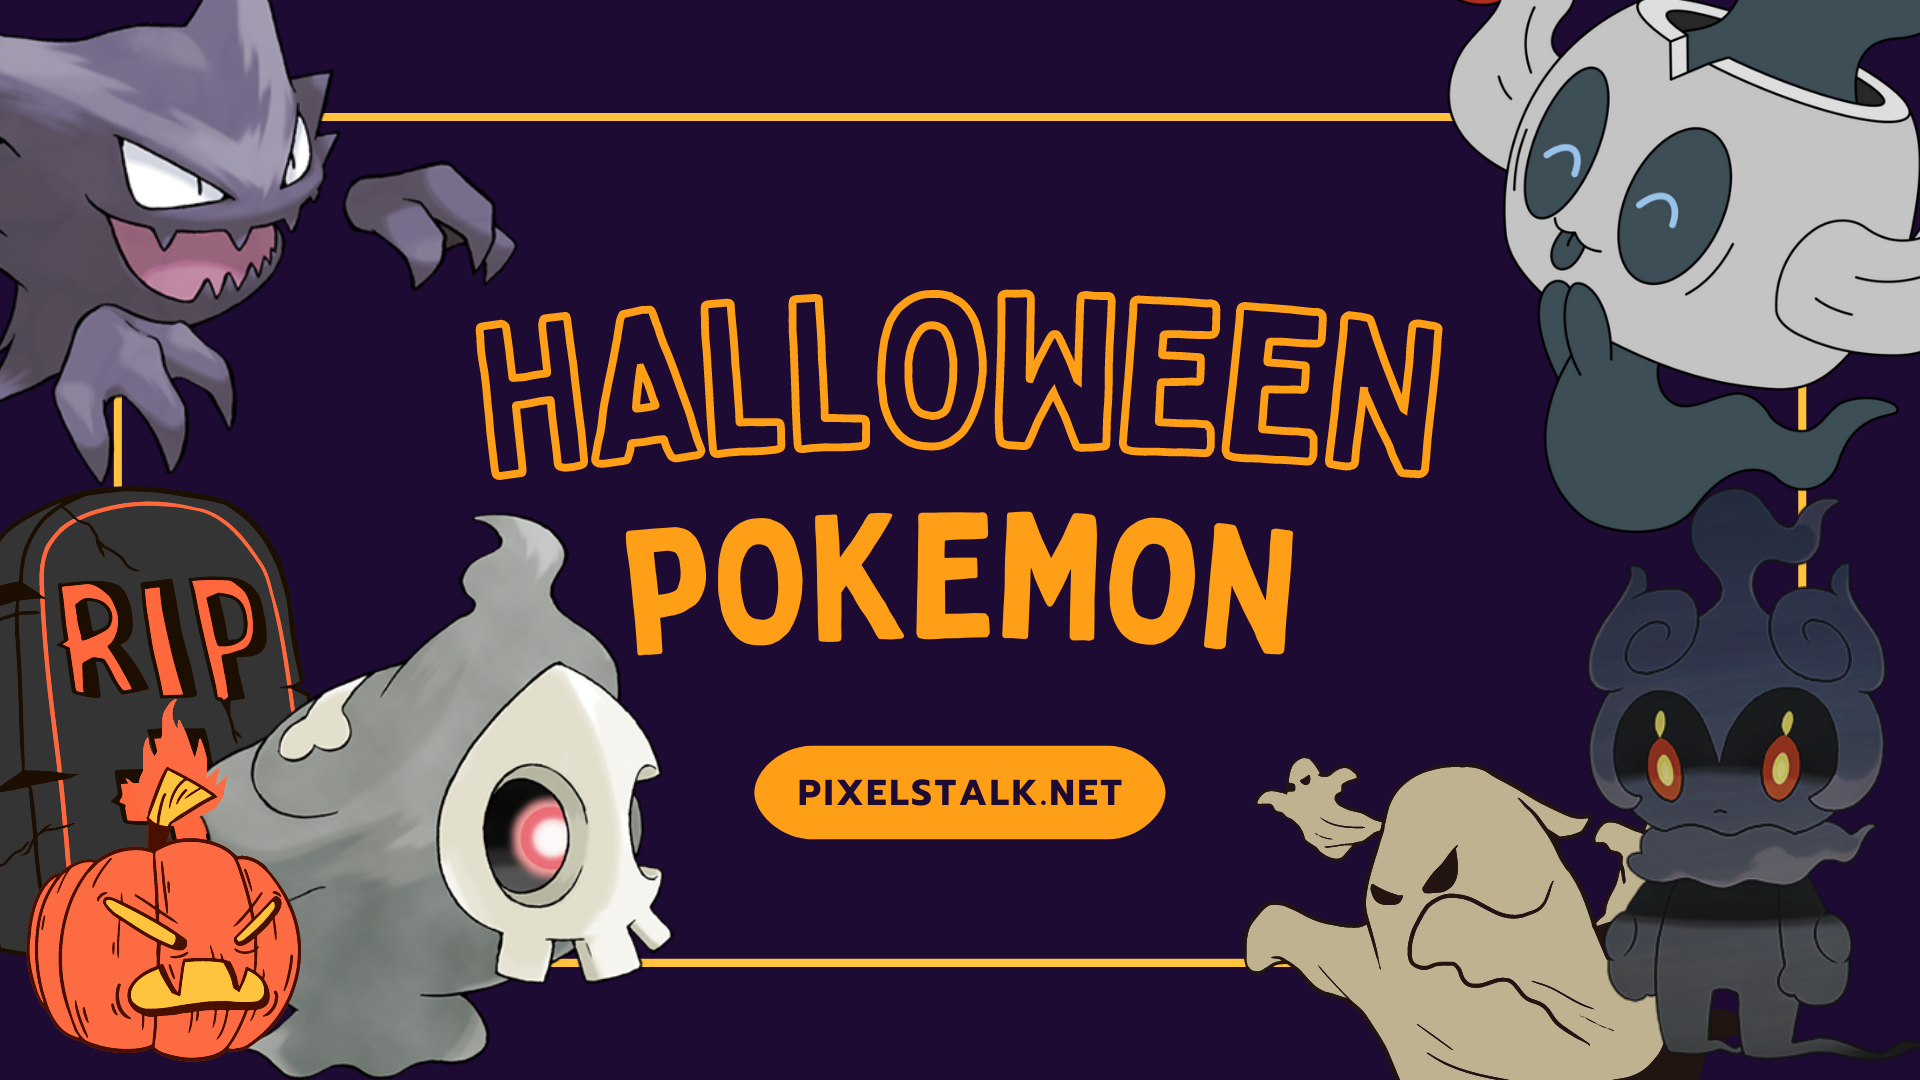 Pokemon Halloween wallpapers: Trang trí màn hình của bạn với những hình nền Halloween độc đáo và đáng sợ của các Pokemon. Chọn những bức ảnh bí ẩn và ma quái để tạo ra không khí đặc biệt cho màn hình của bạn trong mùa lễ này.